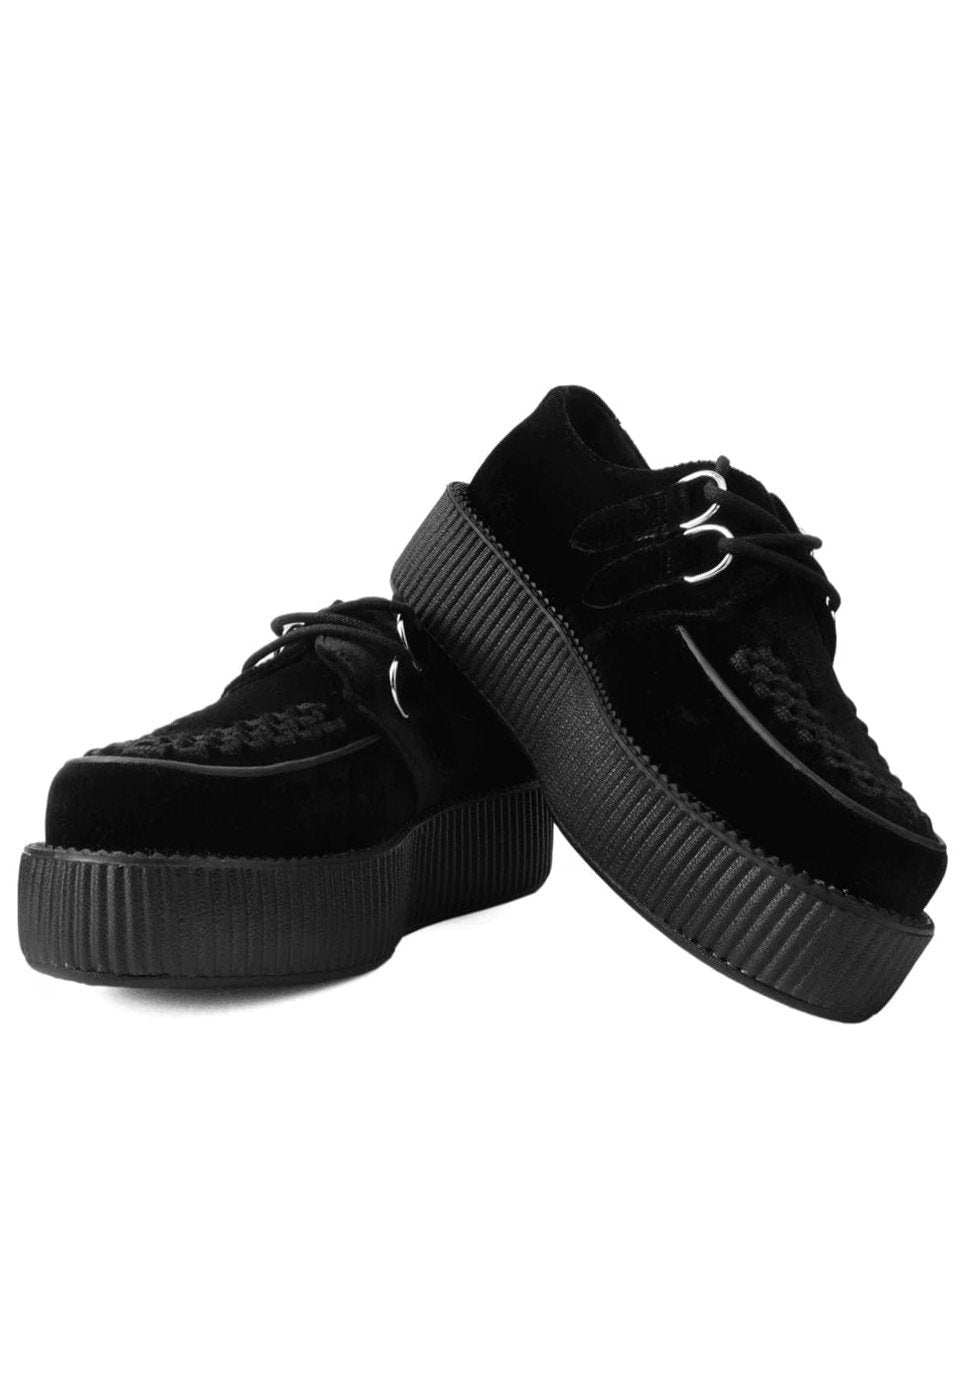 T.U.K. - Viva Mondo Creeper Black Velvet - Girl Shoes